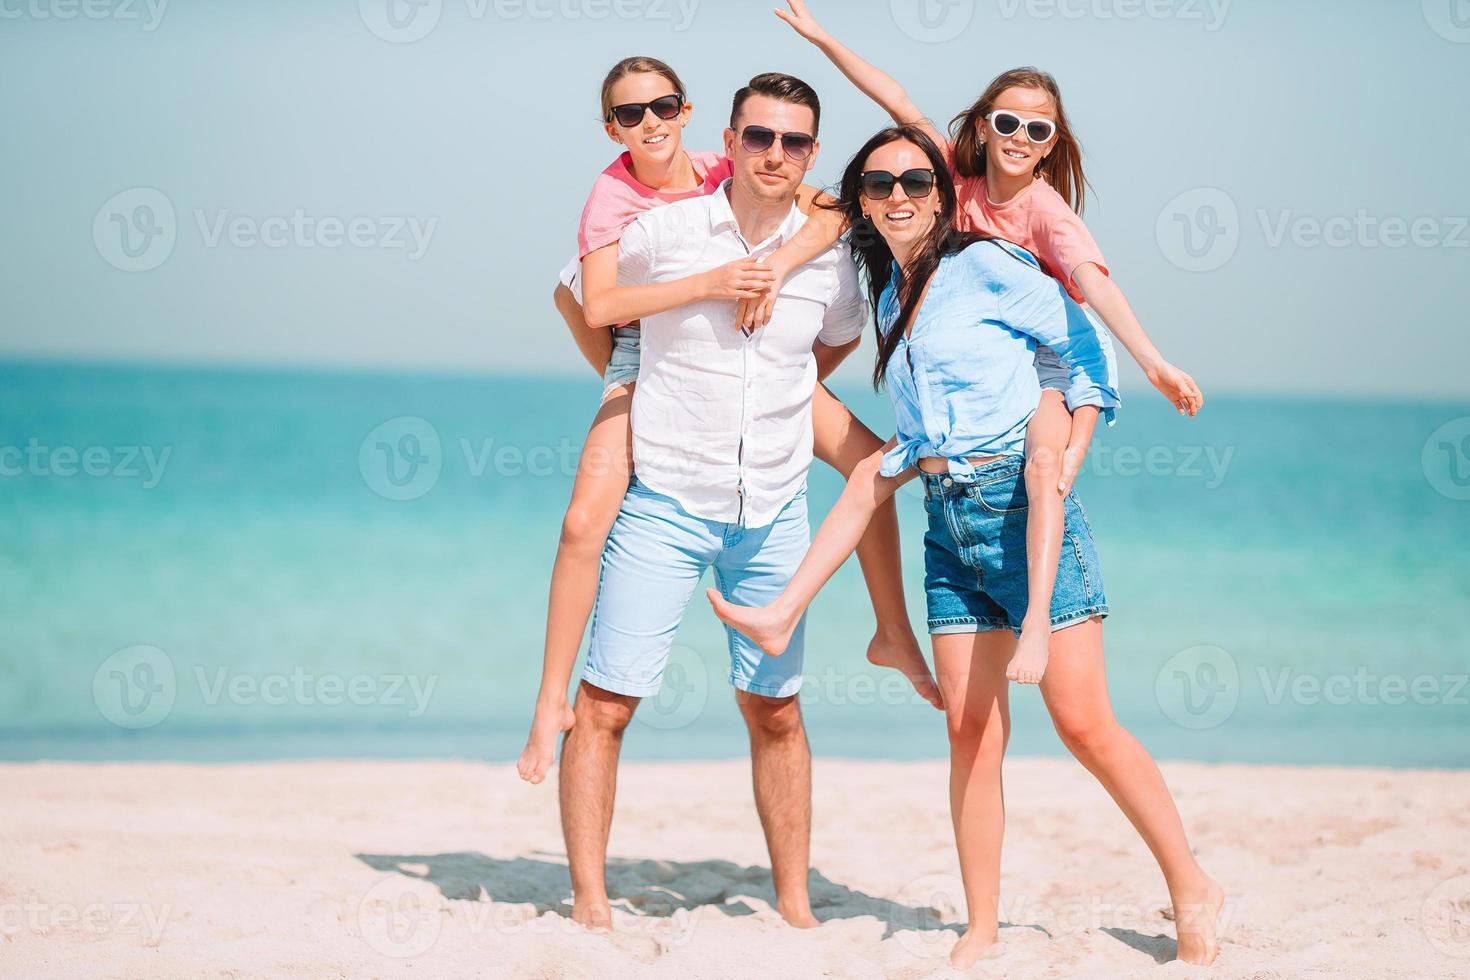 jovem família de férias se diverte muito foto